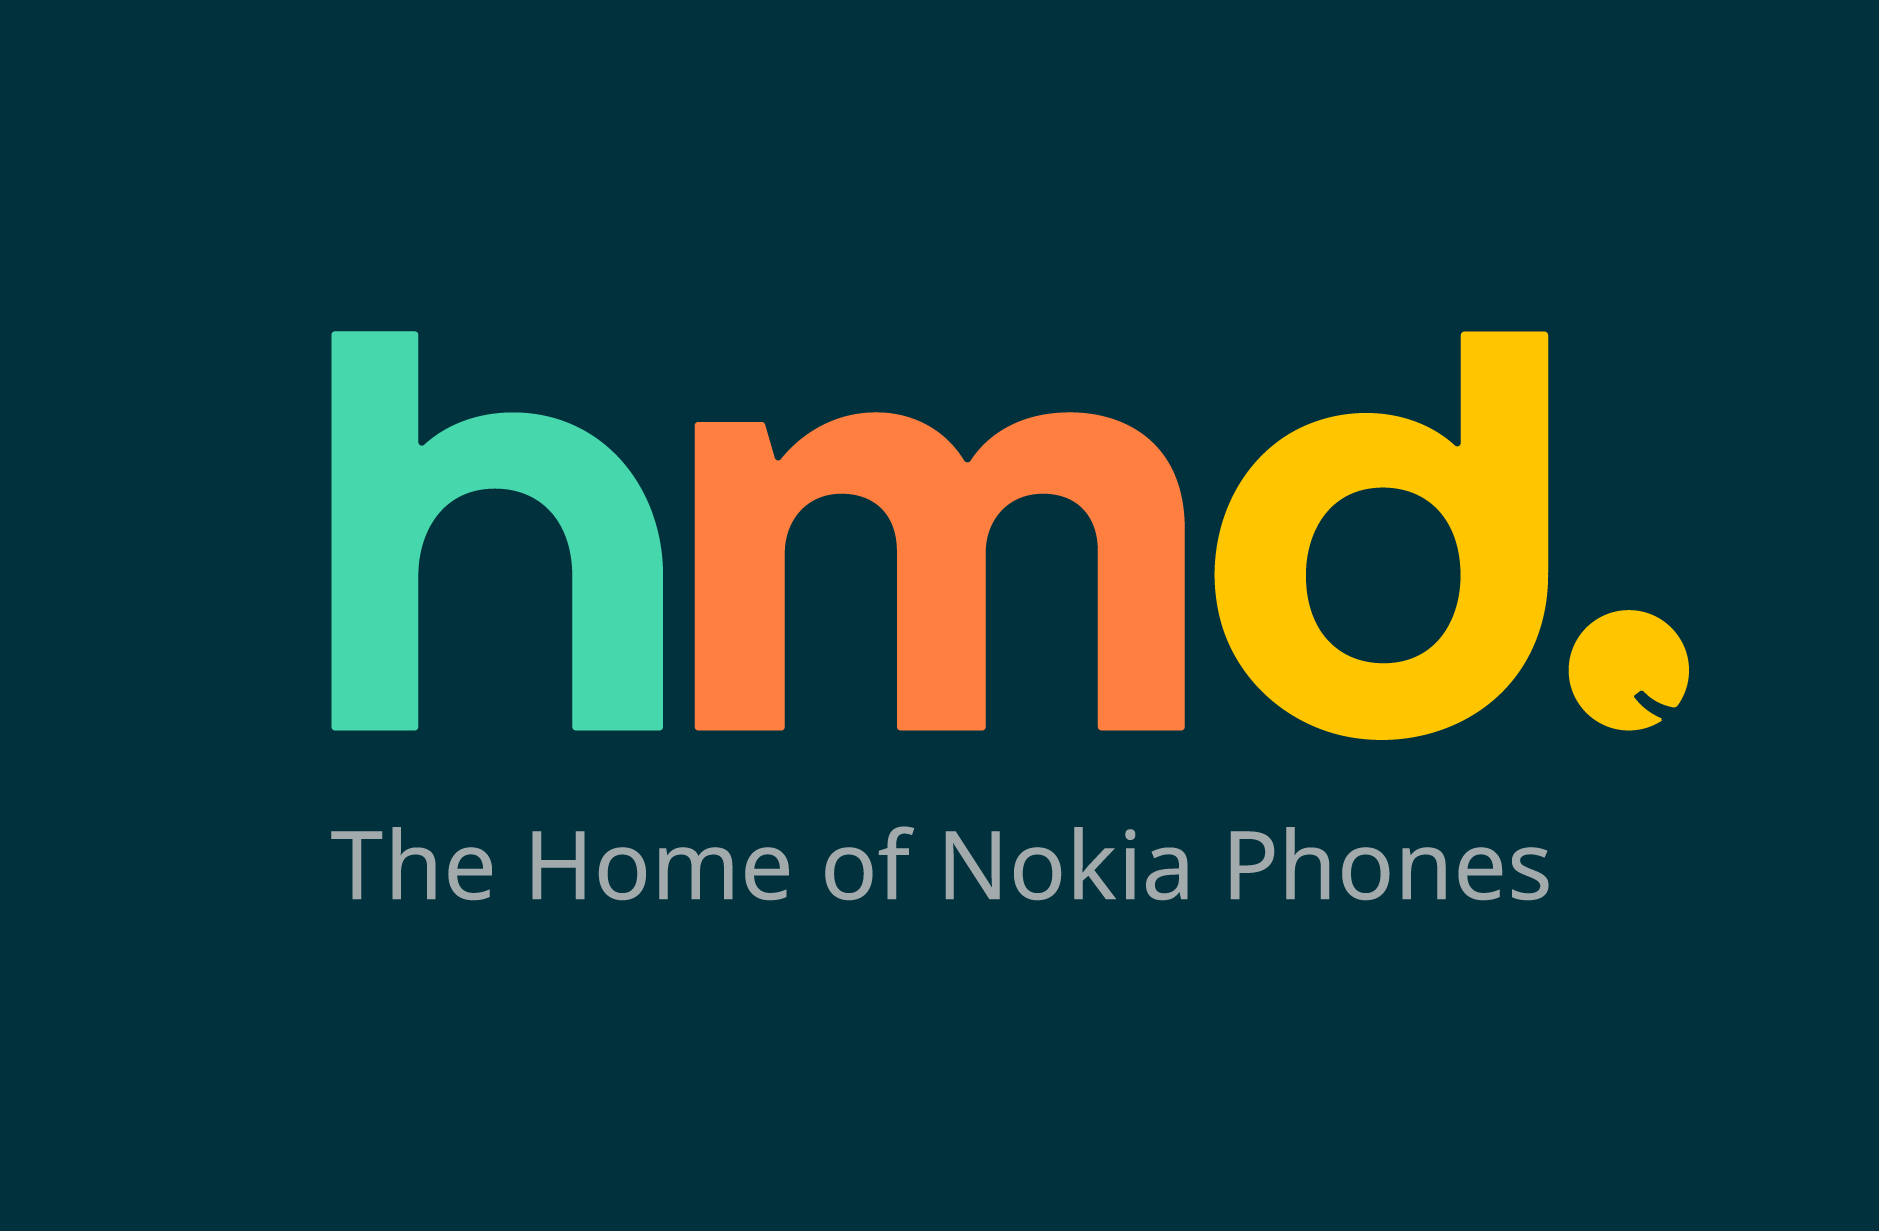 فقدت HMD Global ، الشركة المصنعة لهواتف نوكيا ،